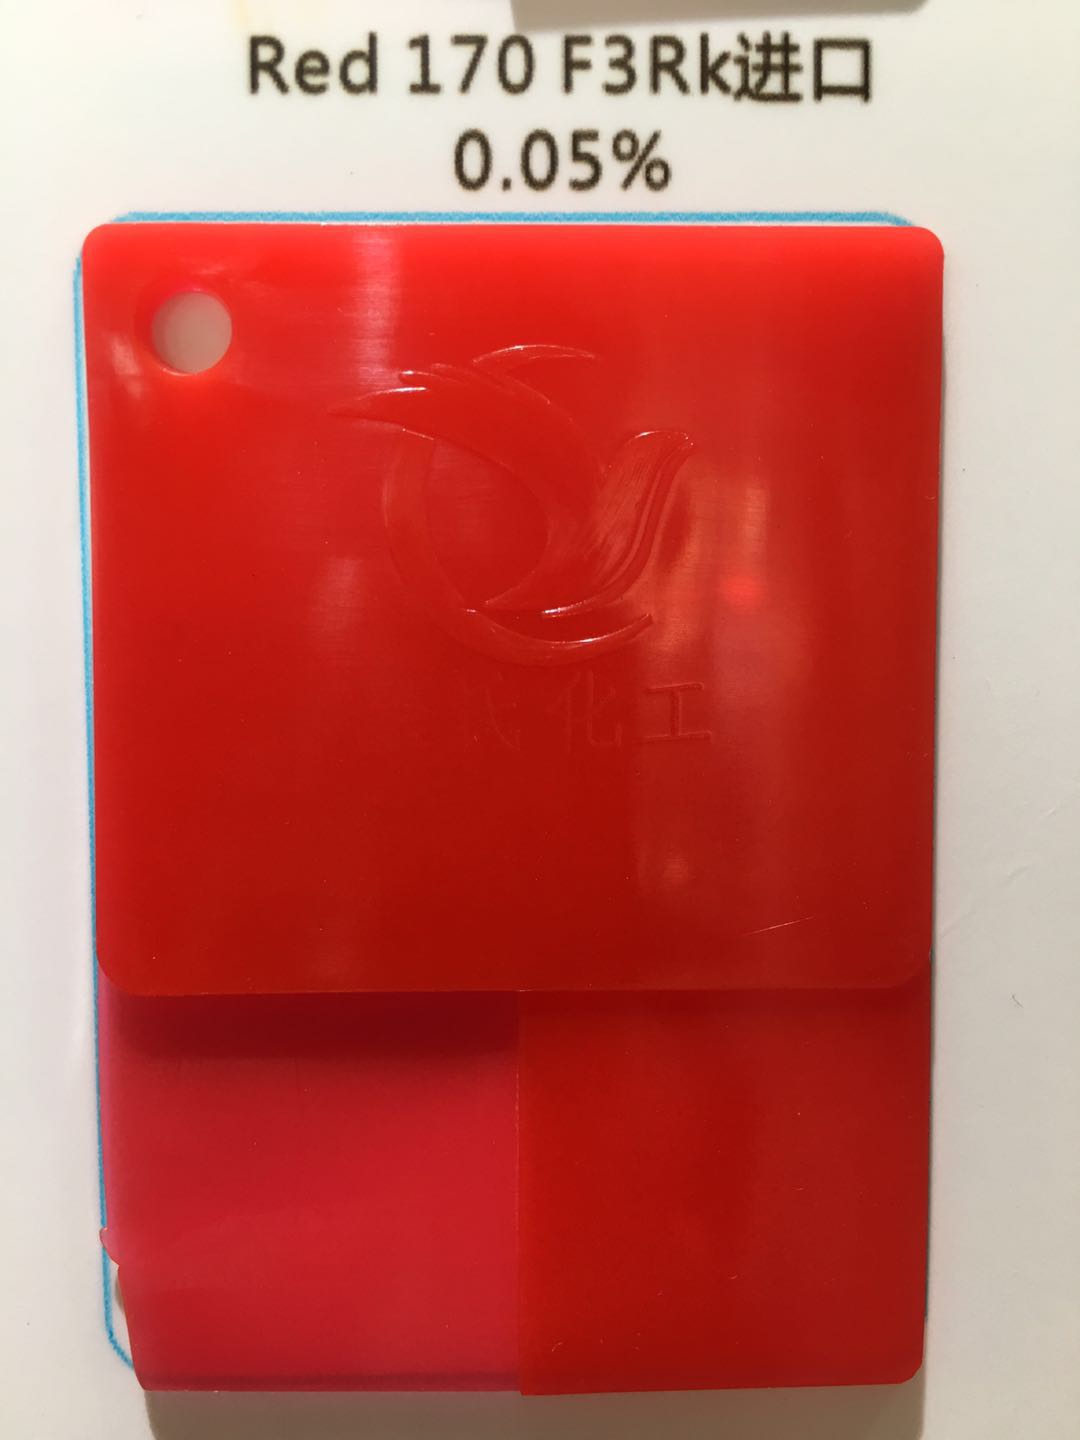 科莱恩F3RK红颜料红170永固图片